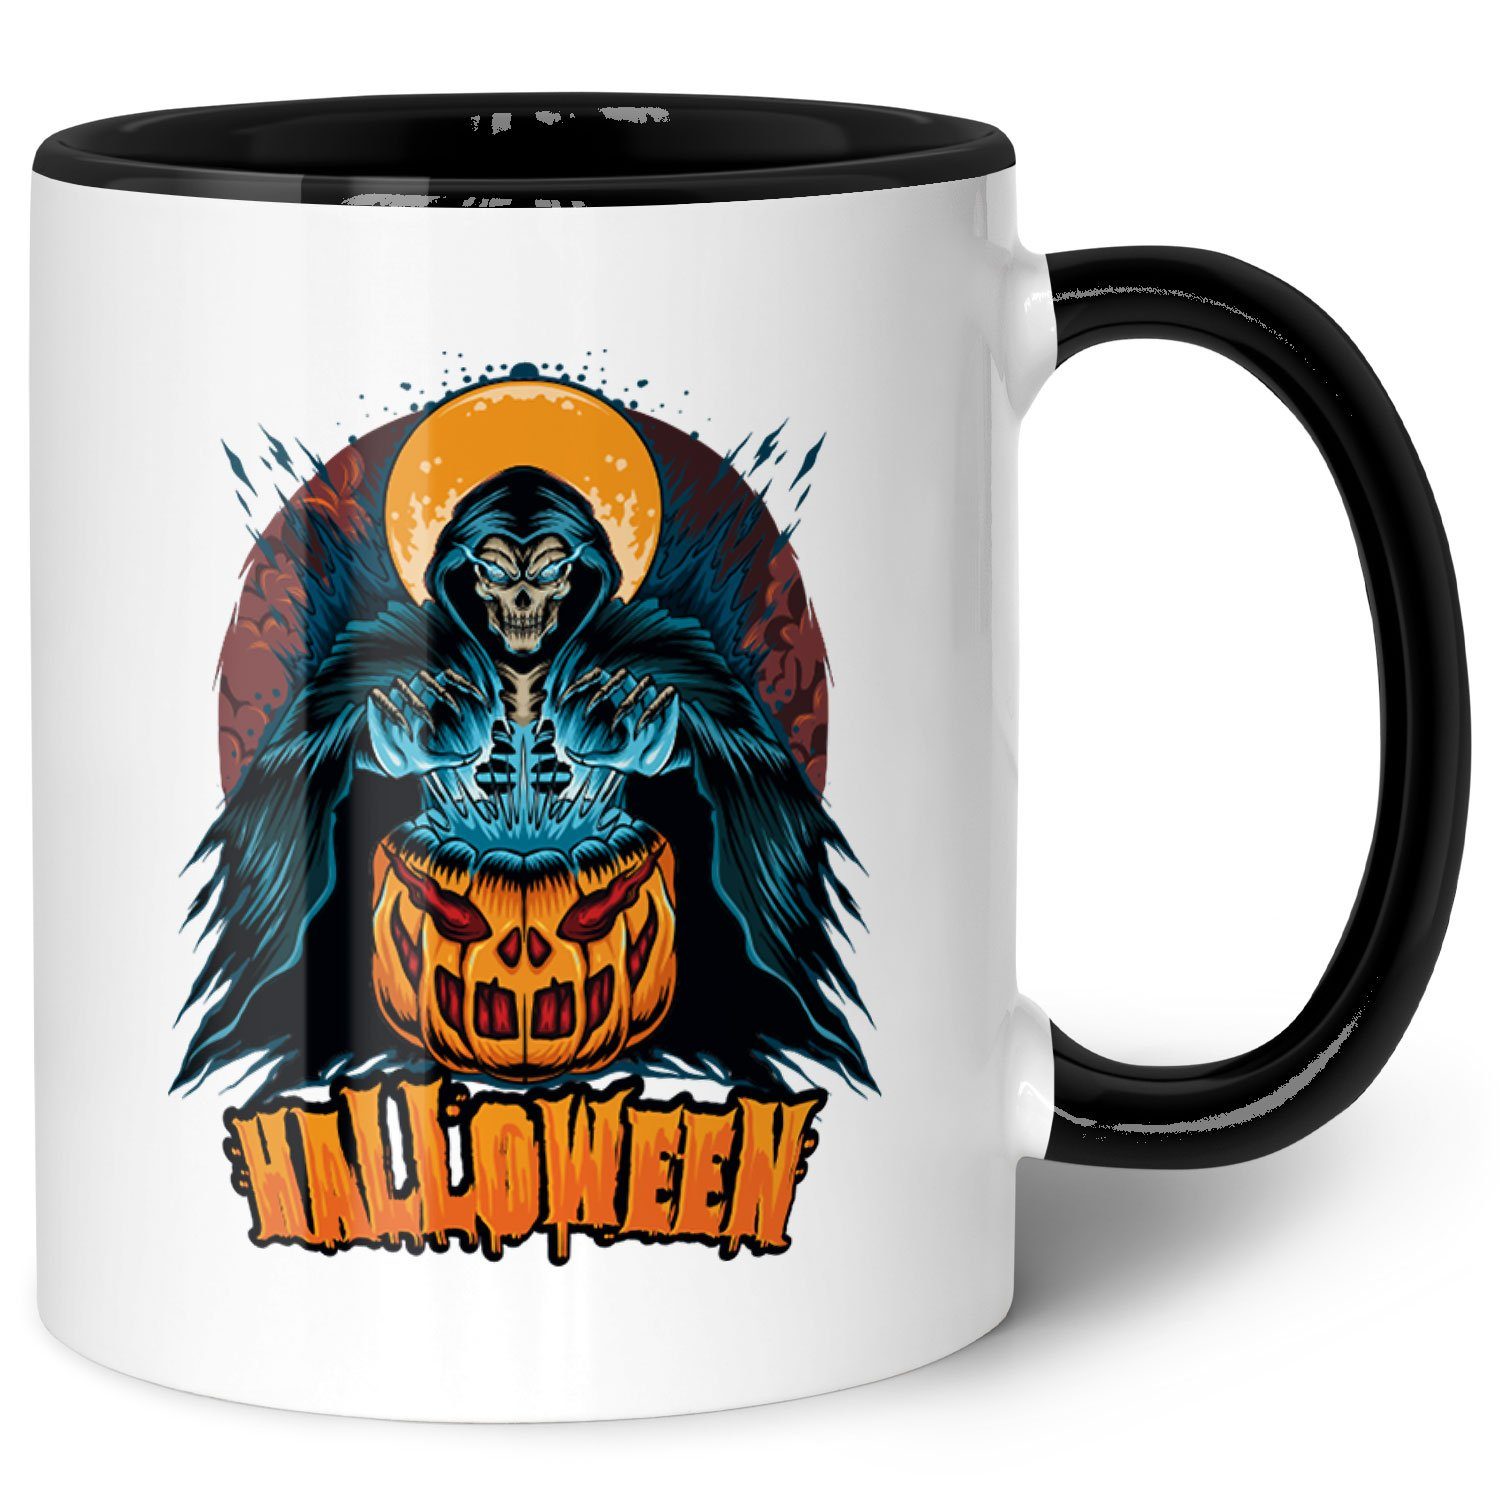 GRAVURZEILE Tasse mit Motiv im Halloween Reaper Design, Keramik, Farbe: Schwarz & Weiß